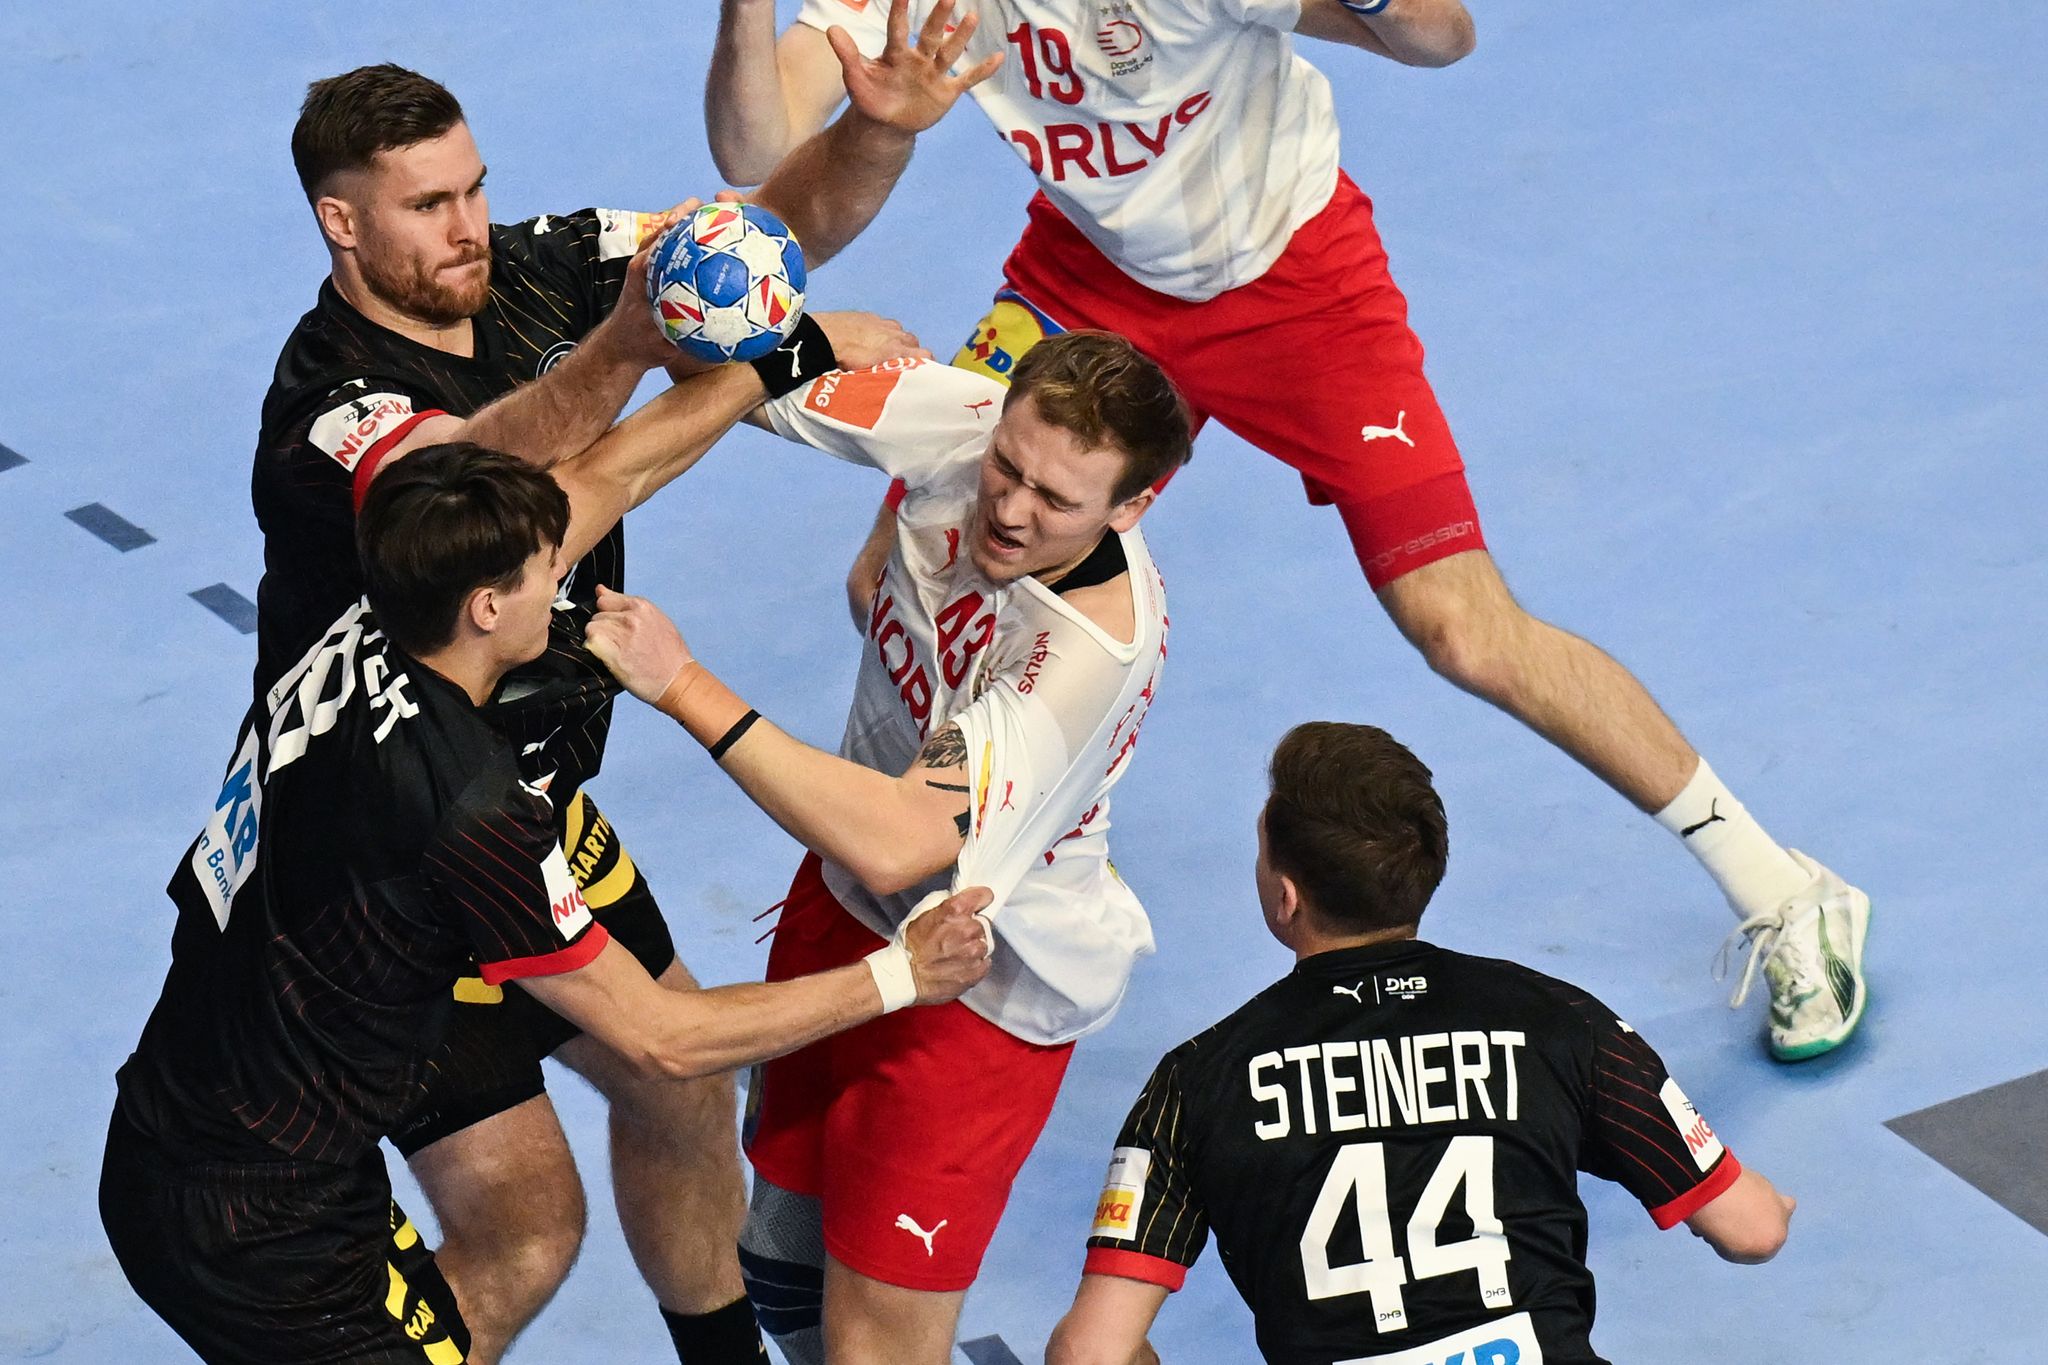 Dänemarks Simon Pytlick (M) wird von der deutschen Deckung attackiert. Das Deutsche Team muss sich im Halbfinale der Handball-EM in Köln gegen Dänemark geschlagen geben.